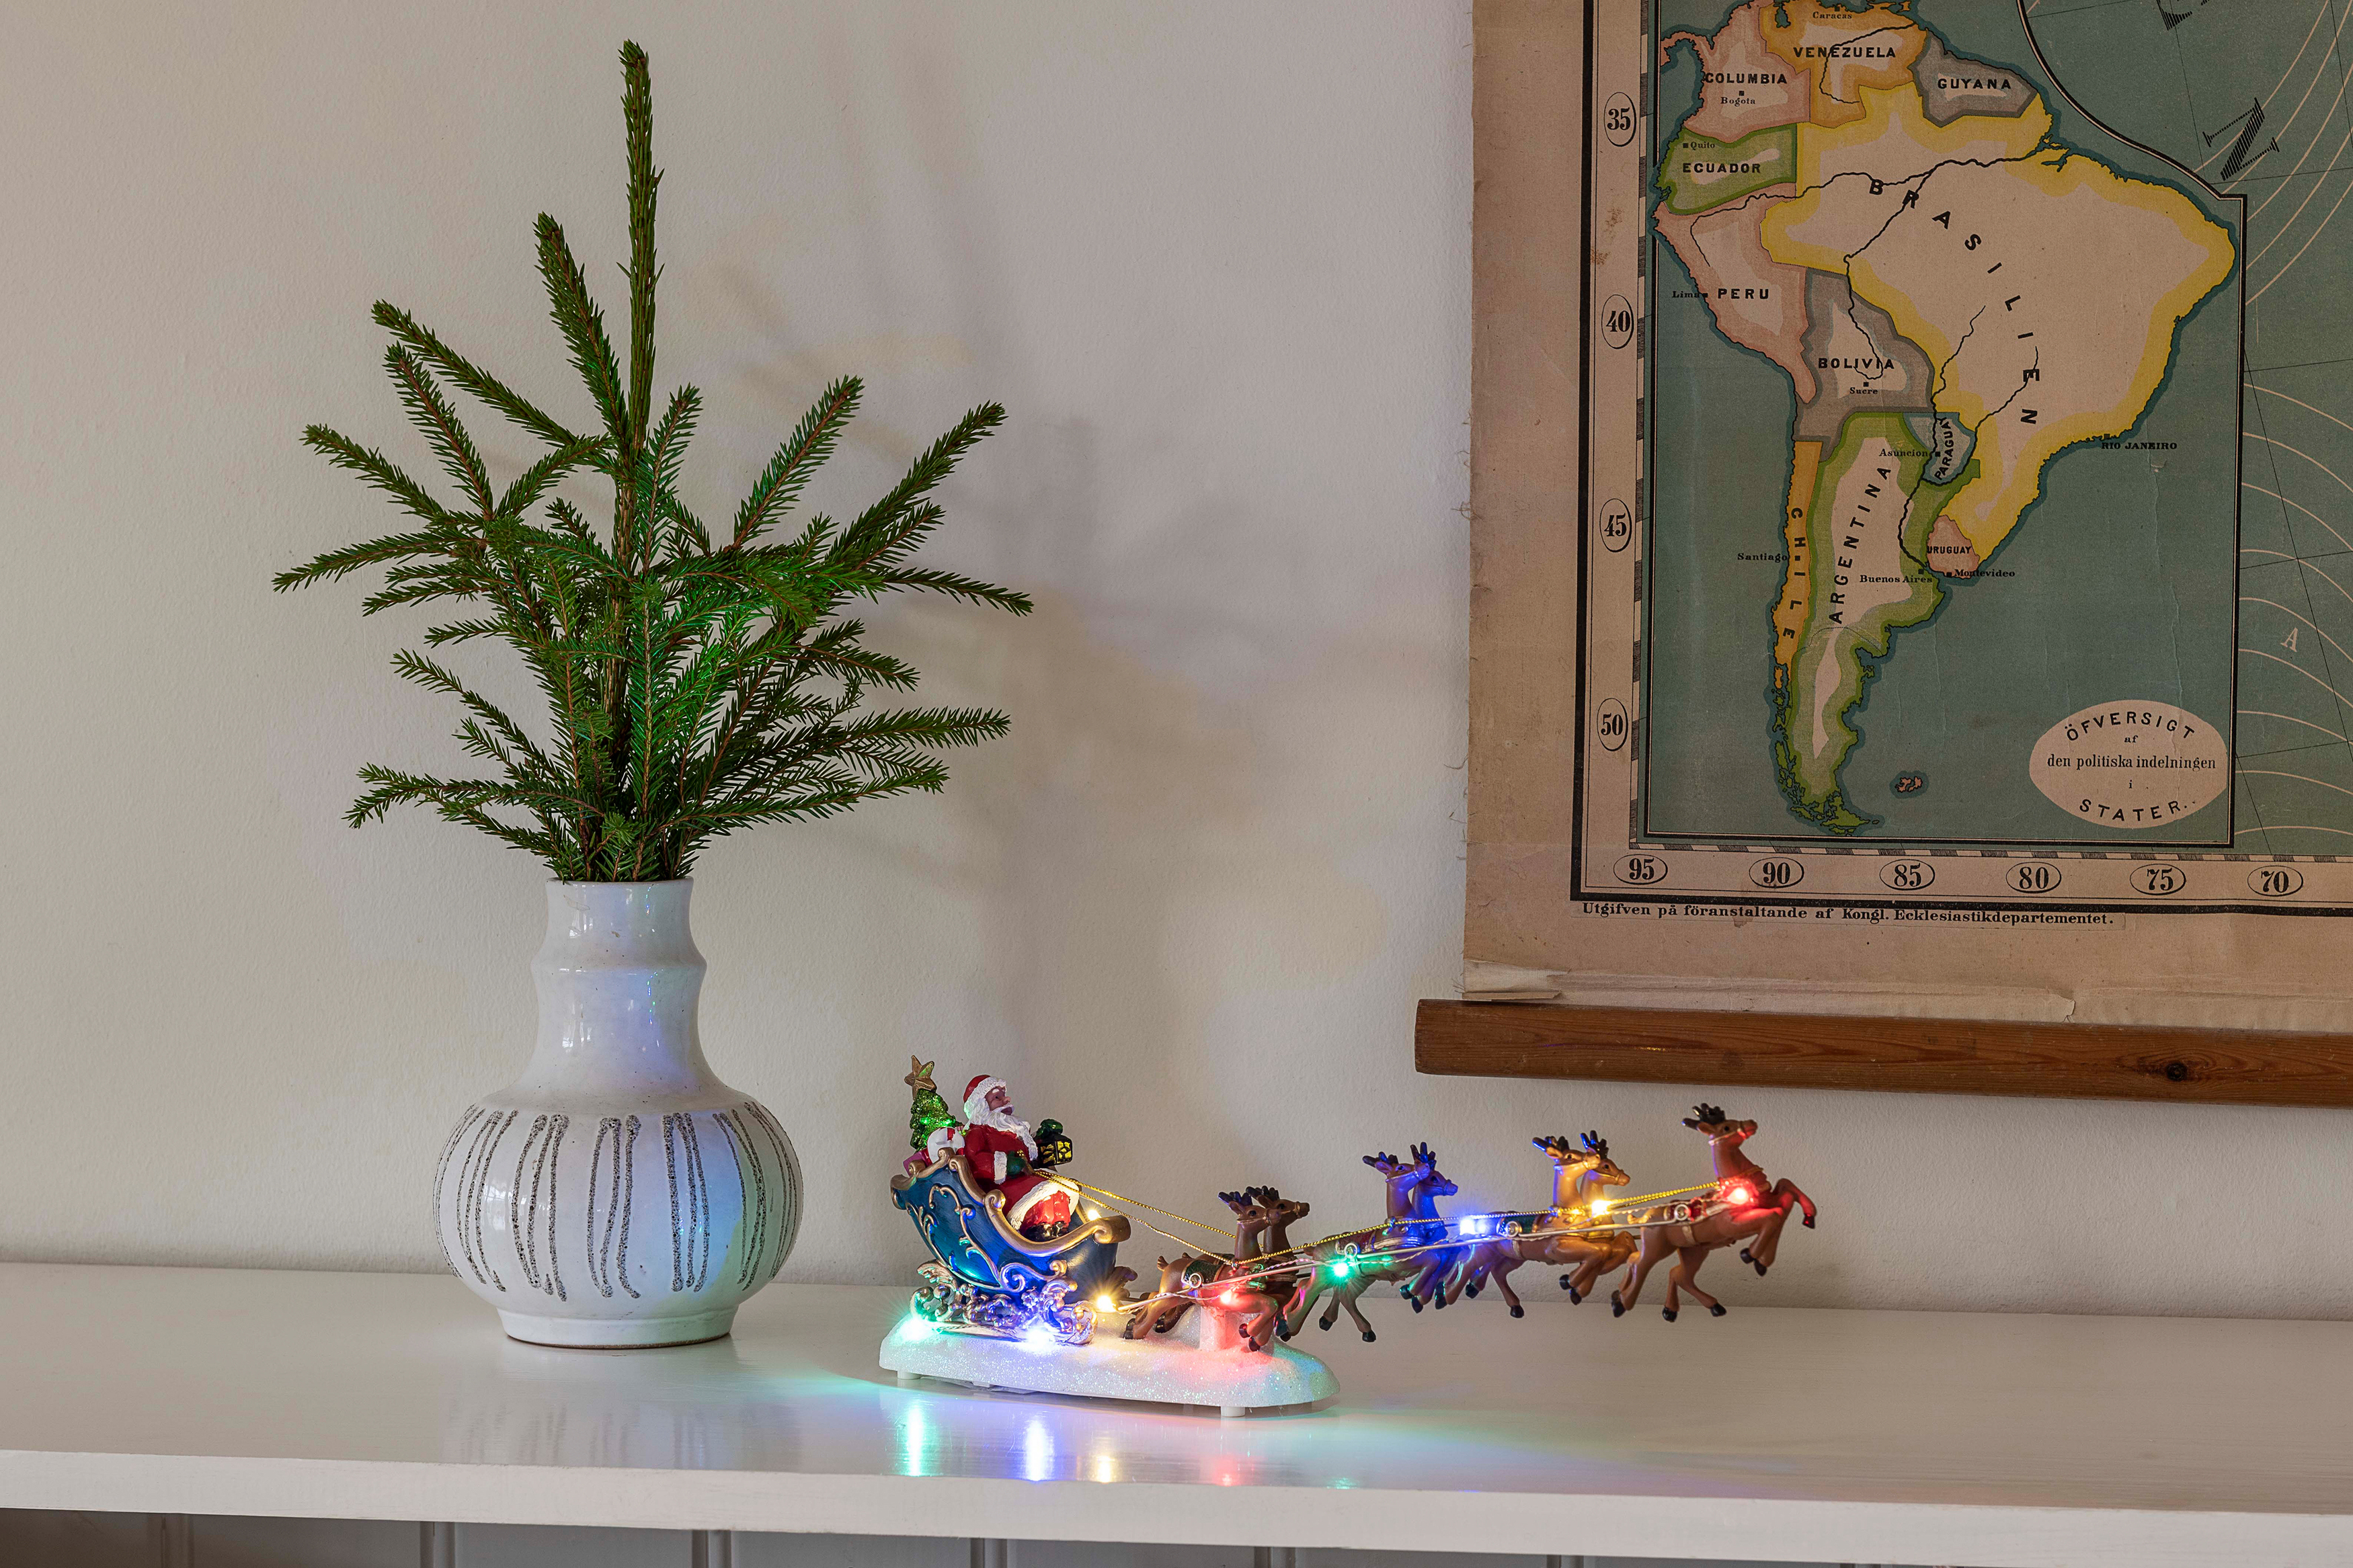 KONSTSMIDE LED Rentieren mit Szenerie Bunt, Weihnachtsmann Schlitten Bunt Leuchtdekoration, im